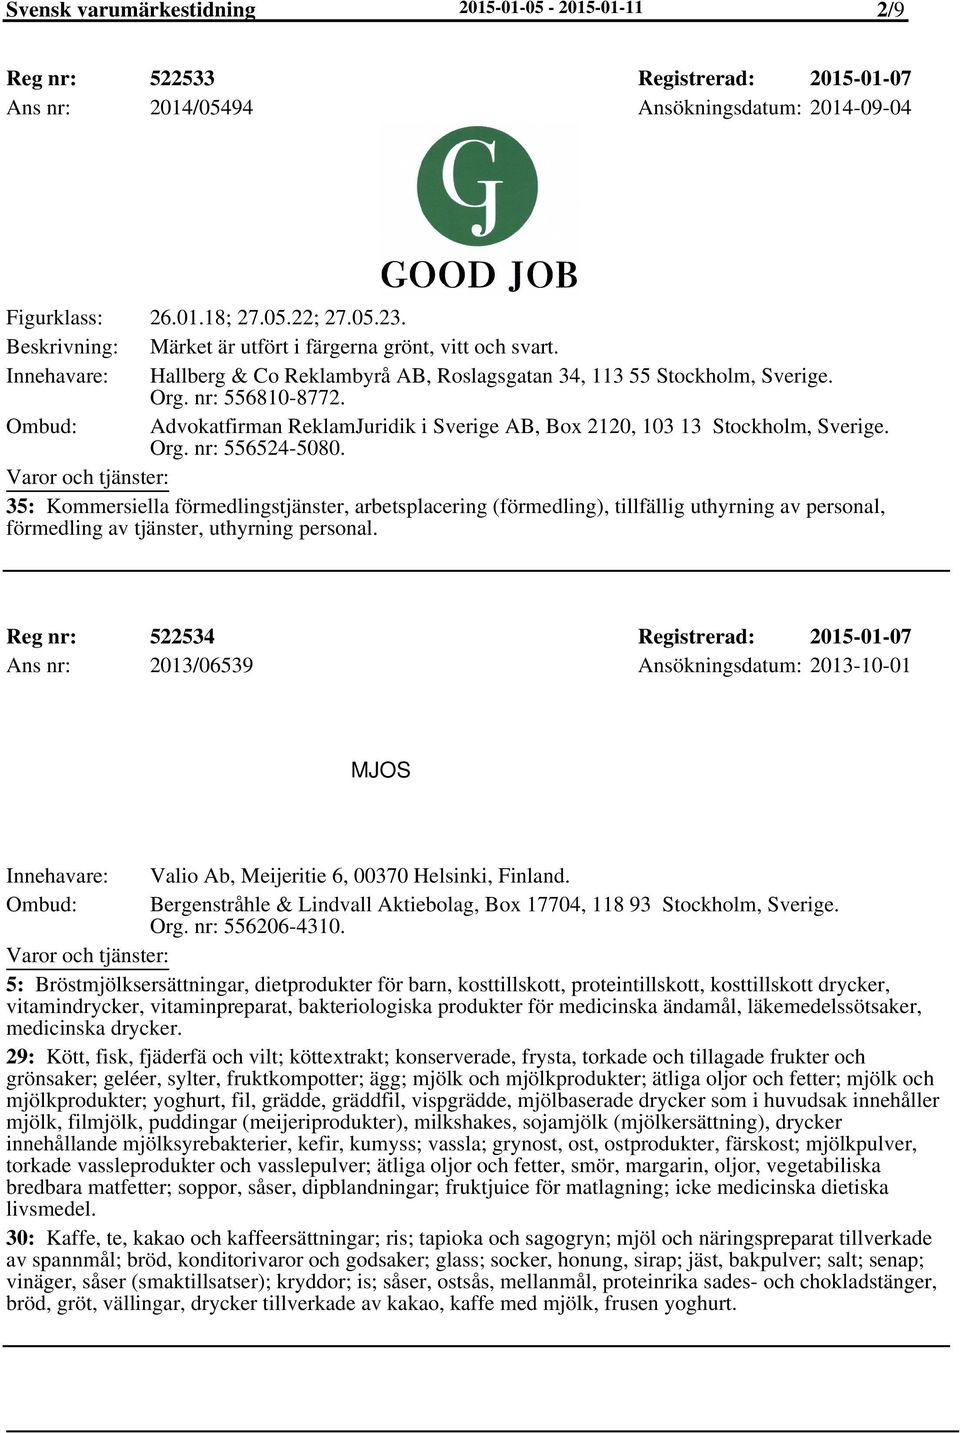 Advokatfirman ReklamJuridik i Sverige AB, Box 2120, 103 13 Org. nr: 556524-5080.